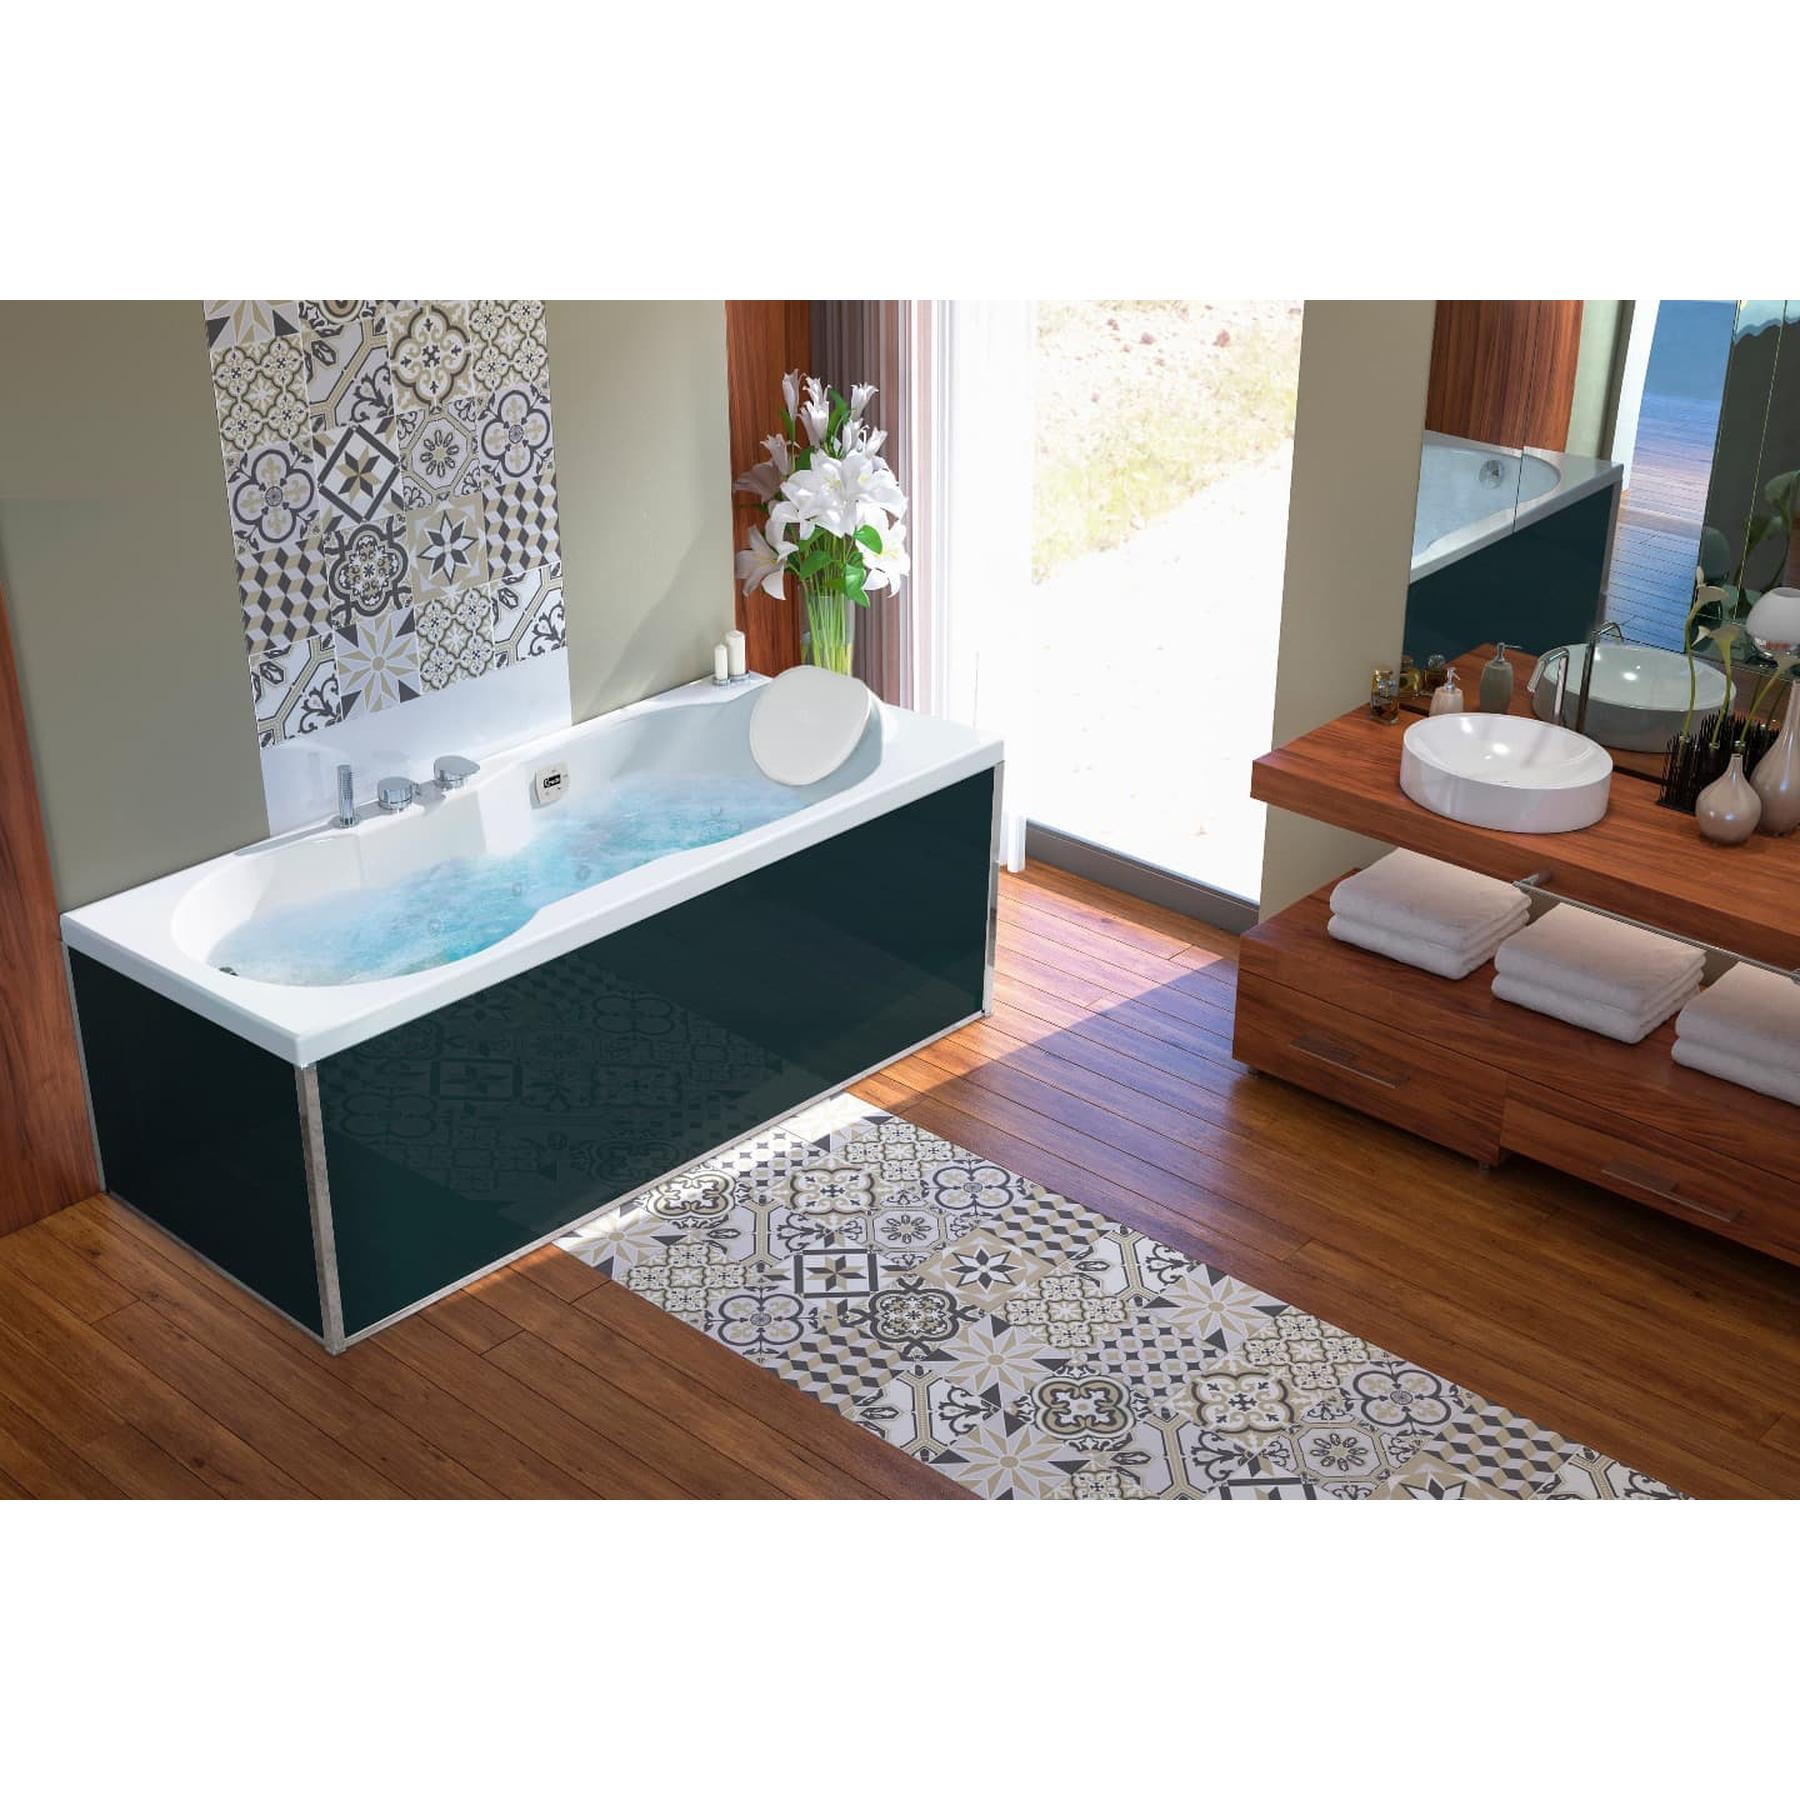 Tablier de baignoire en verre noir 180 compatible avec toutes les baignoires KINEDO rectangulaires sauf modèles STAR et SAMBA